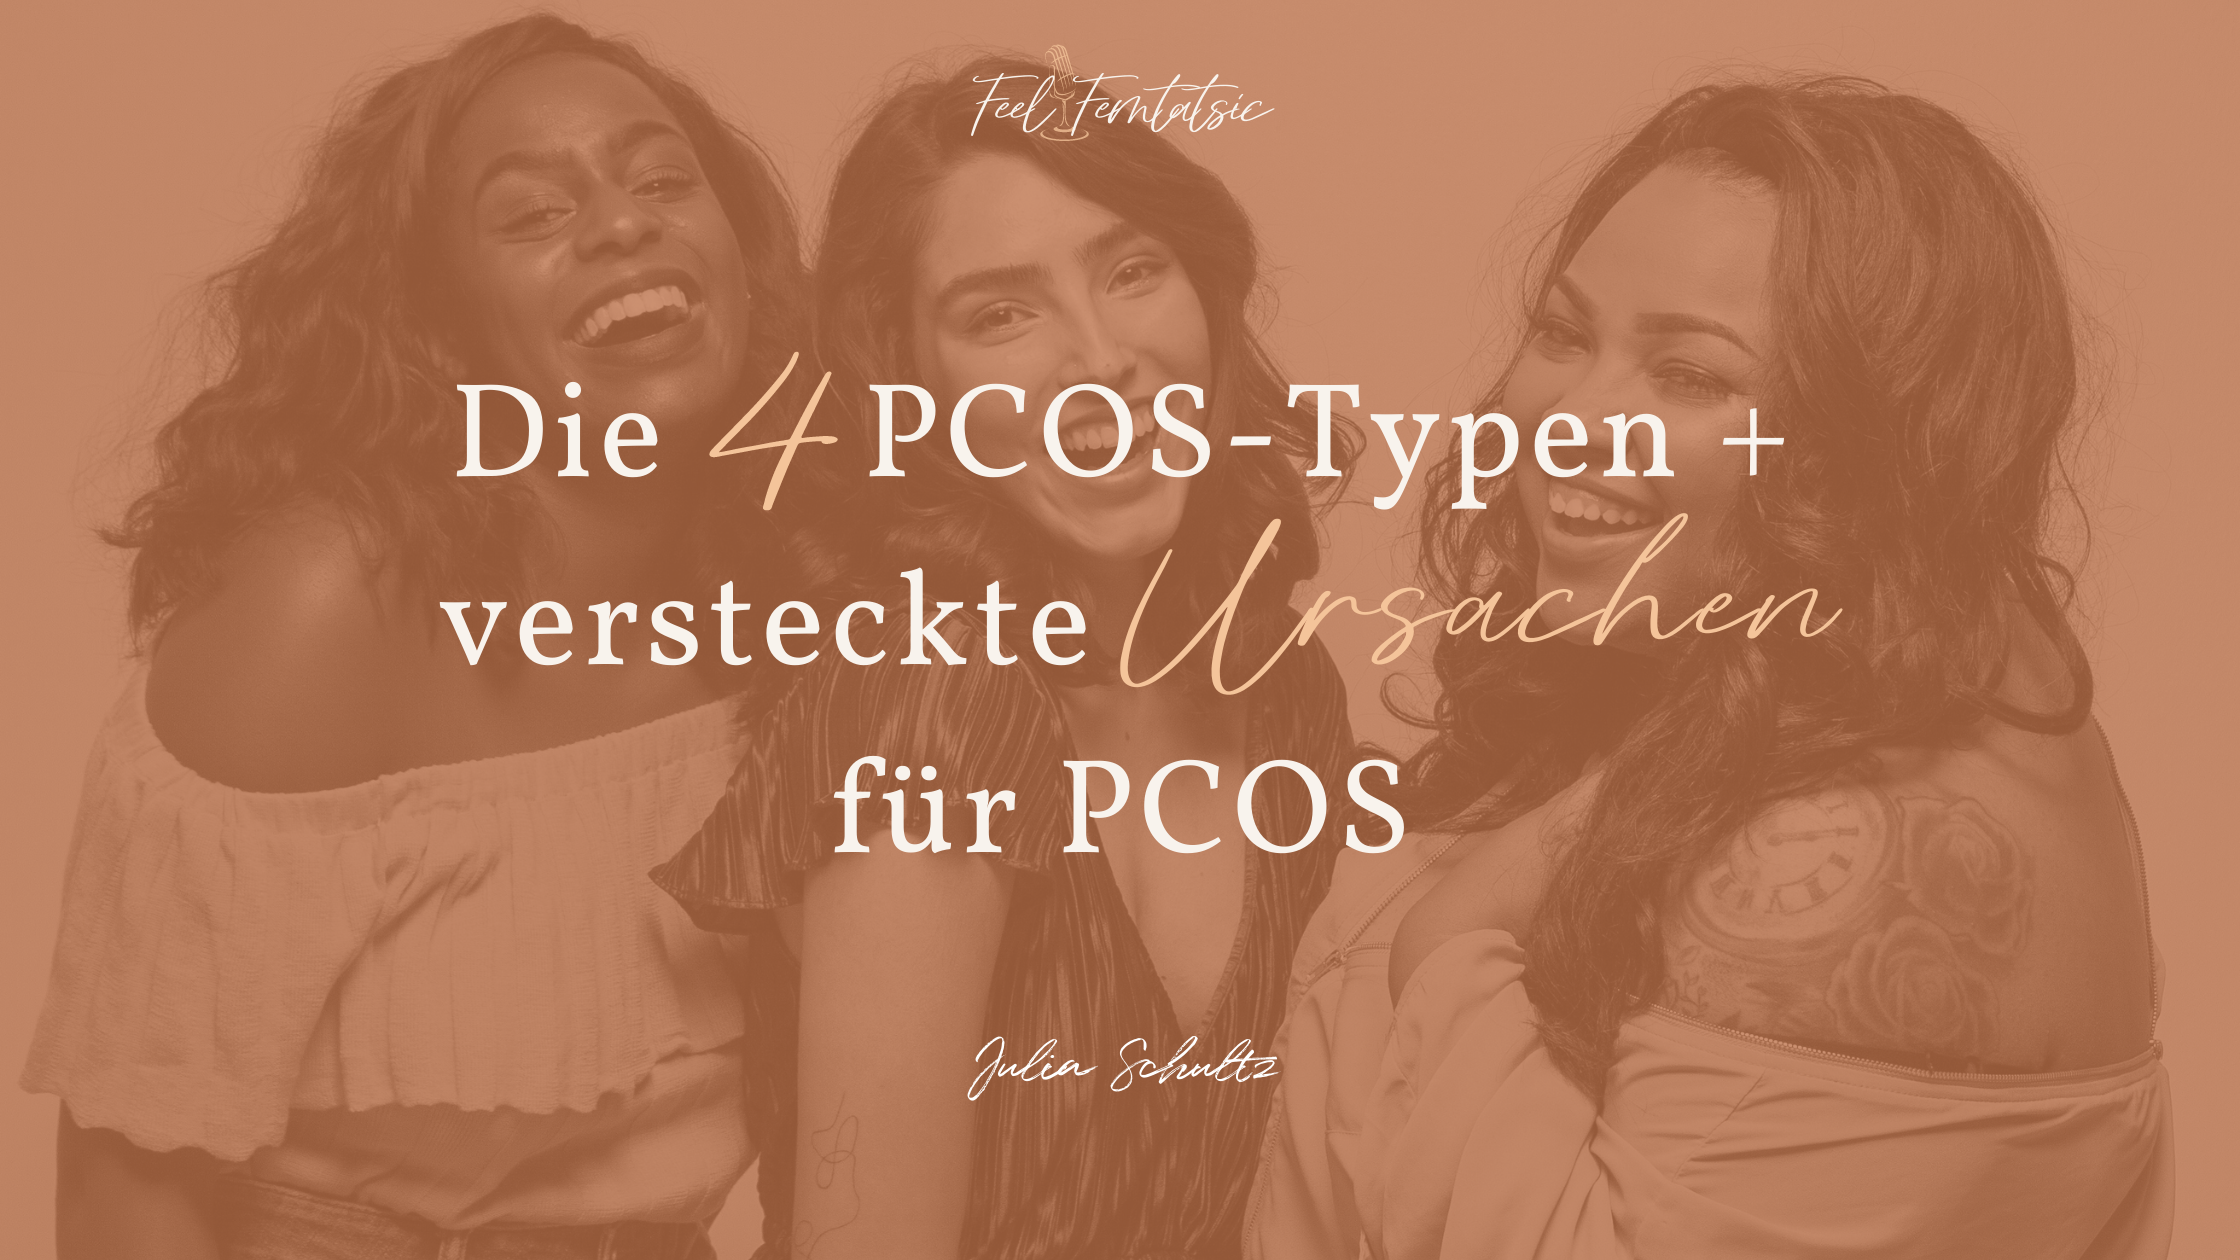 Podcast - Die 4 PCOS-Typen + versteckte Ursachen für PCOS